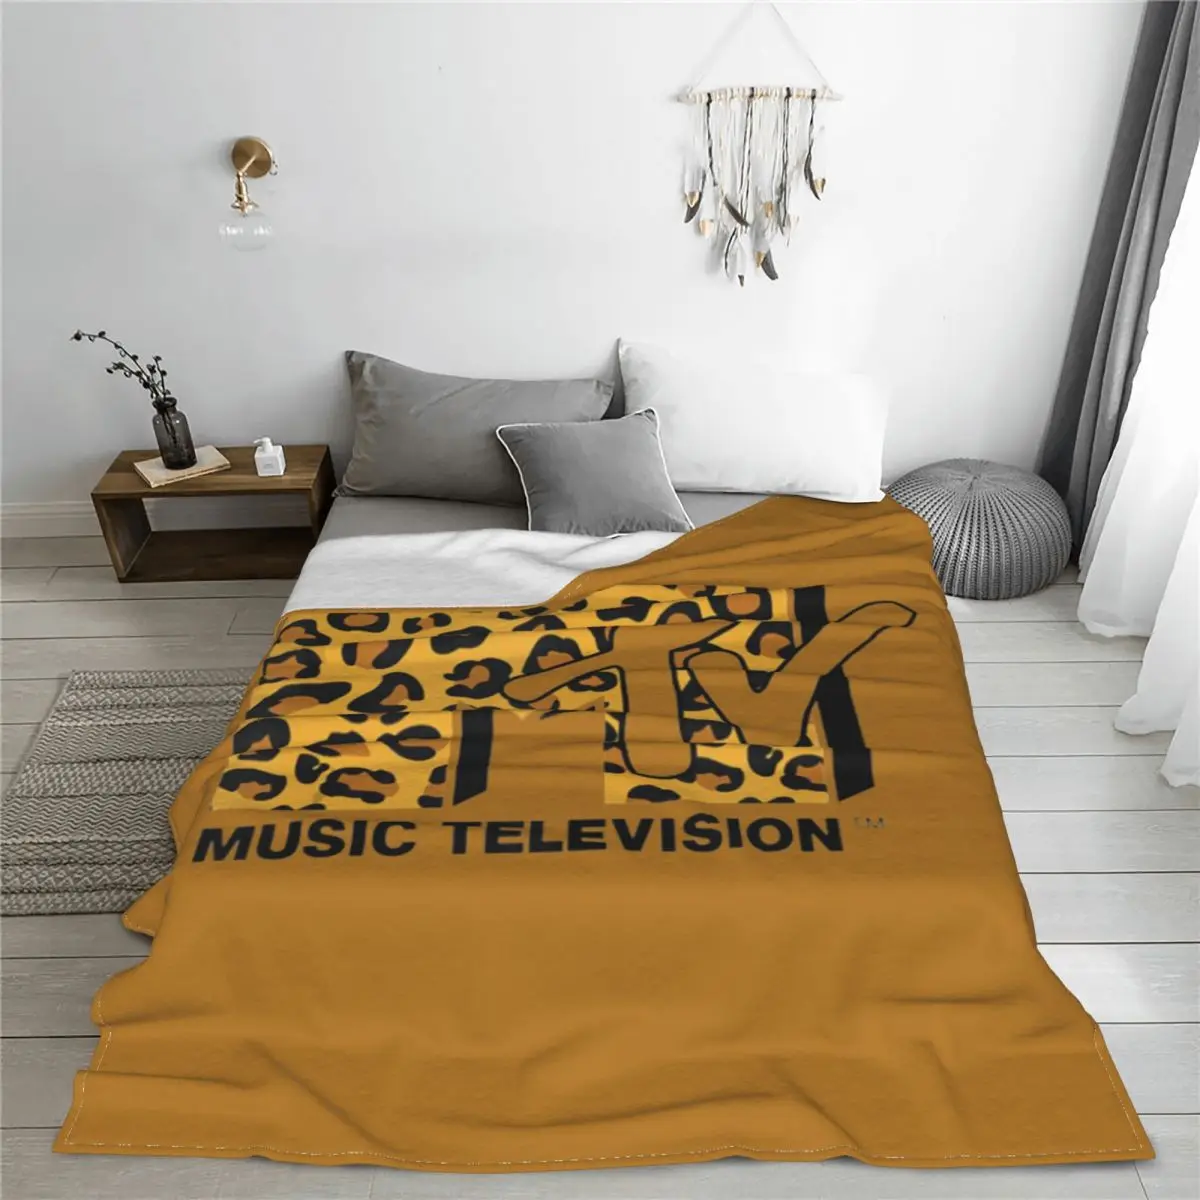 I want my MTV Odolné prehoz cez posteľ Posteľ Cumlík Deka Posteľ Hodiť Deka minimalistický umelecké písmo dizajn leopard tlač načechraný